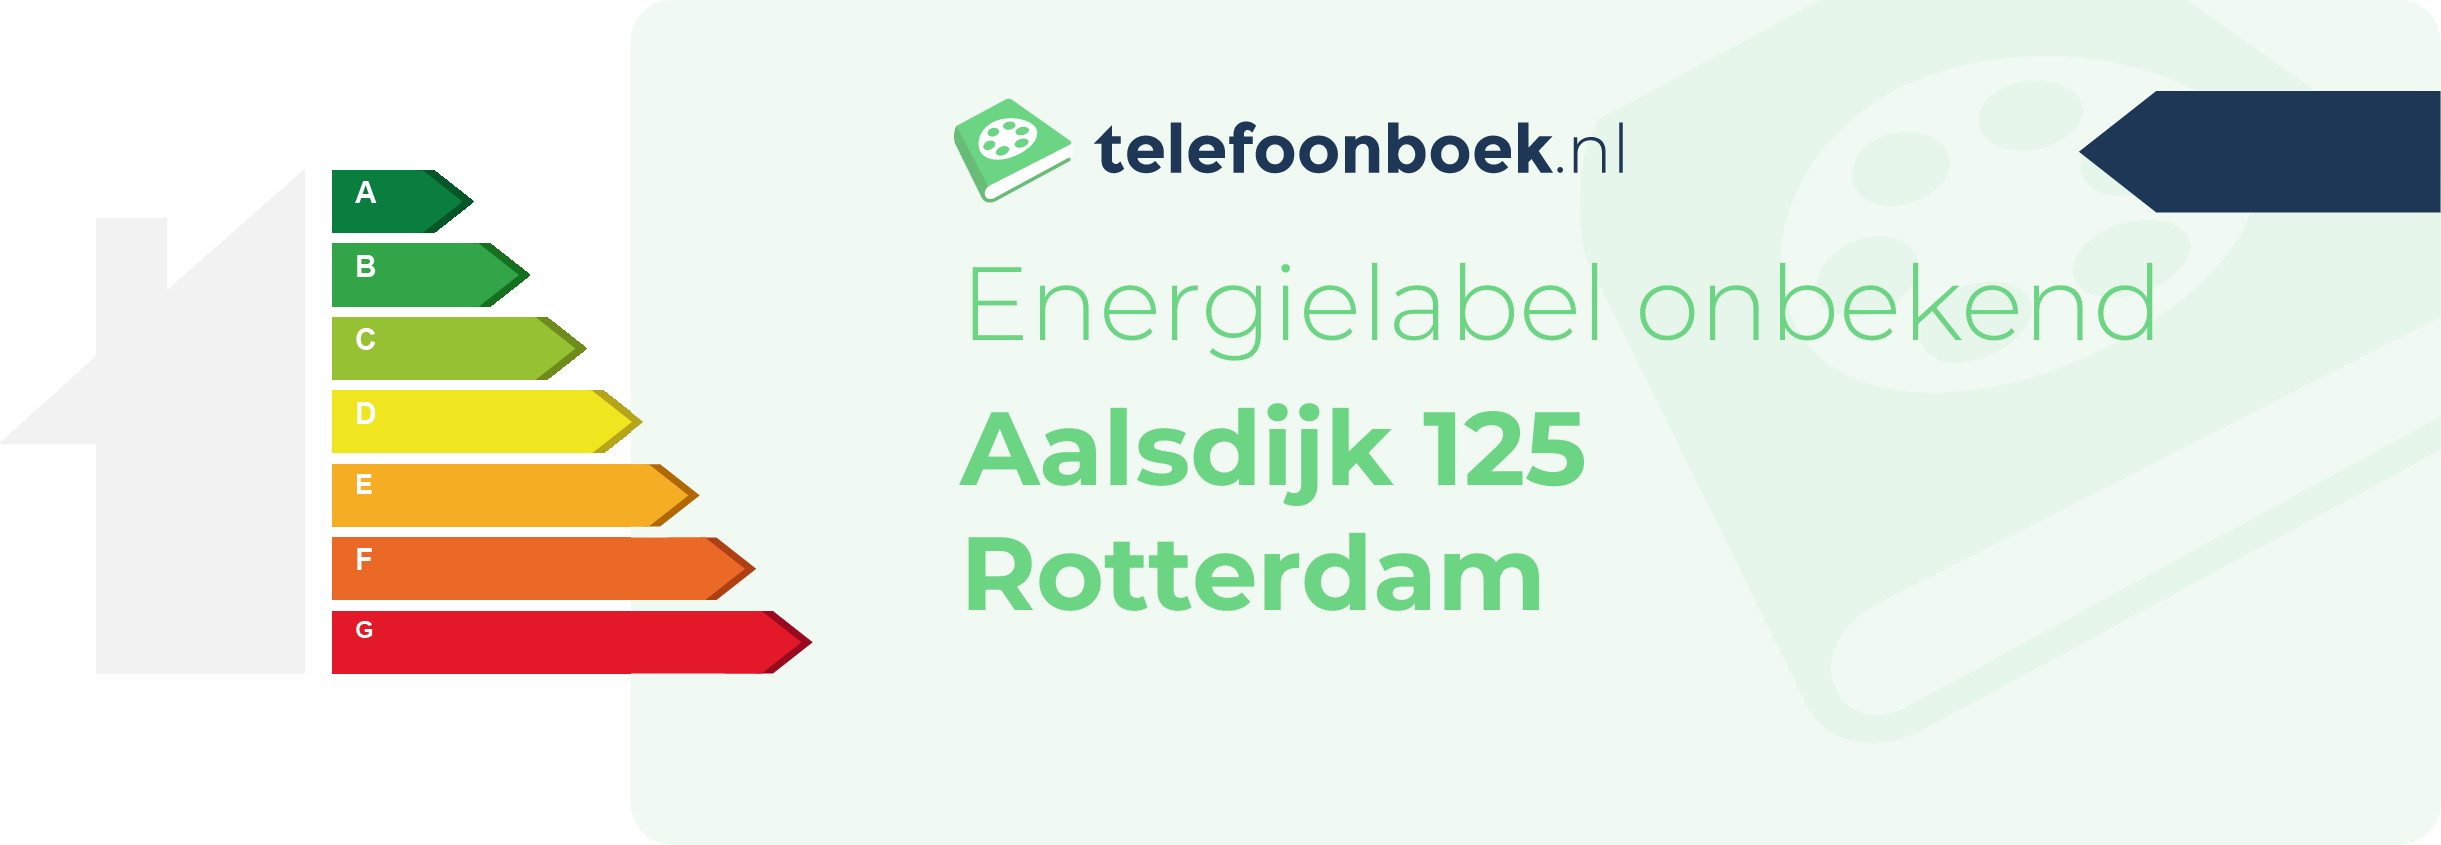 Energielabel Aalsdijk 125 Rotterdam